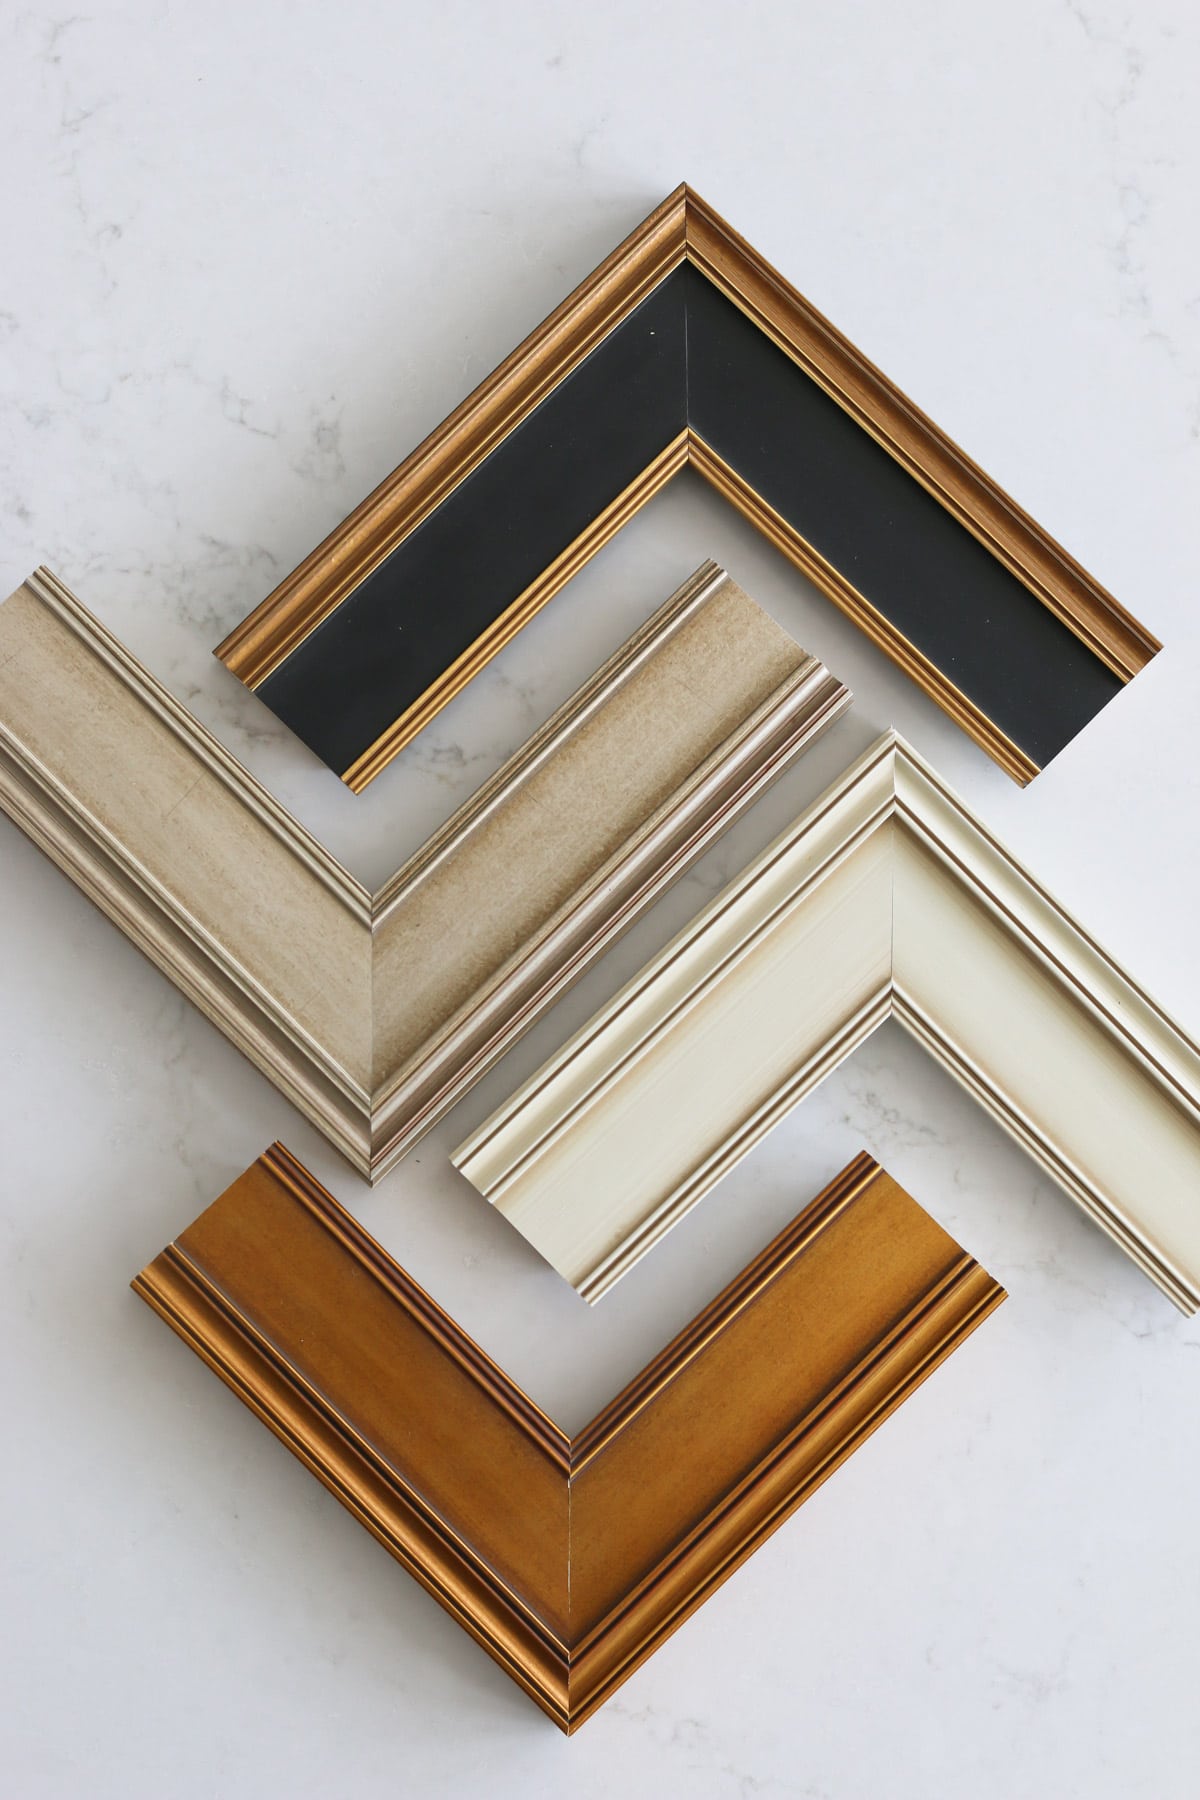 four samples of Deco TV Frames for a traditional interior design